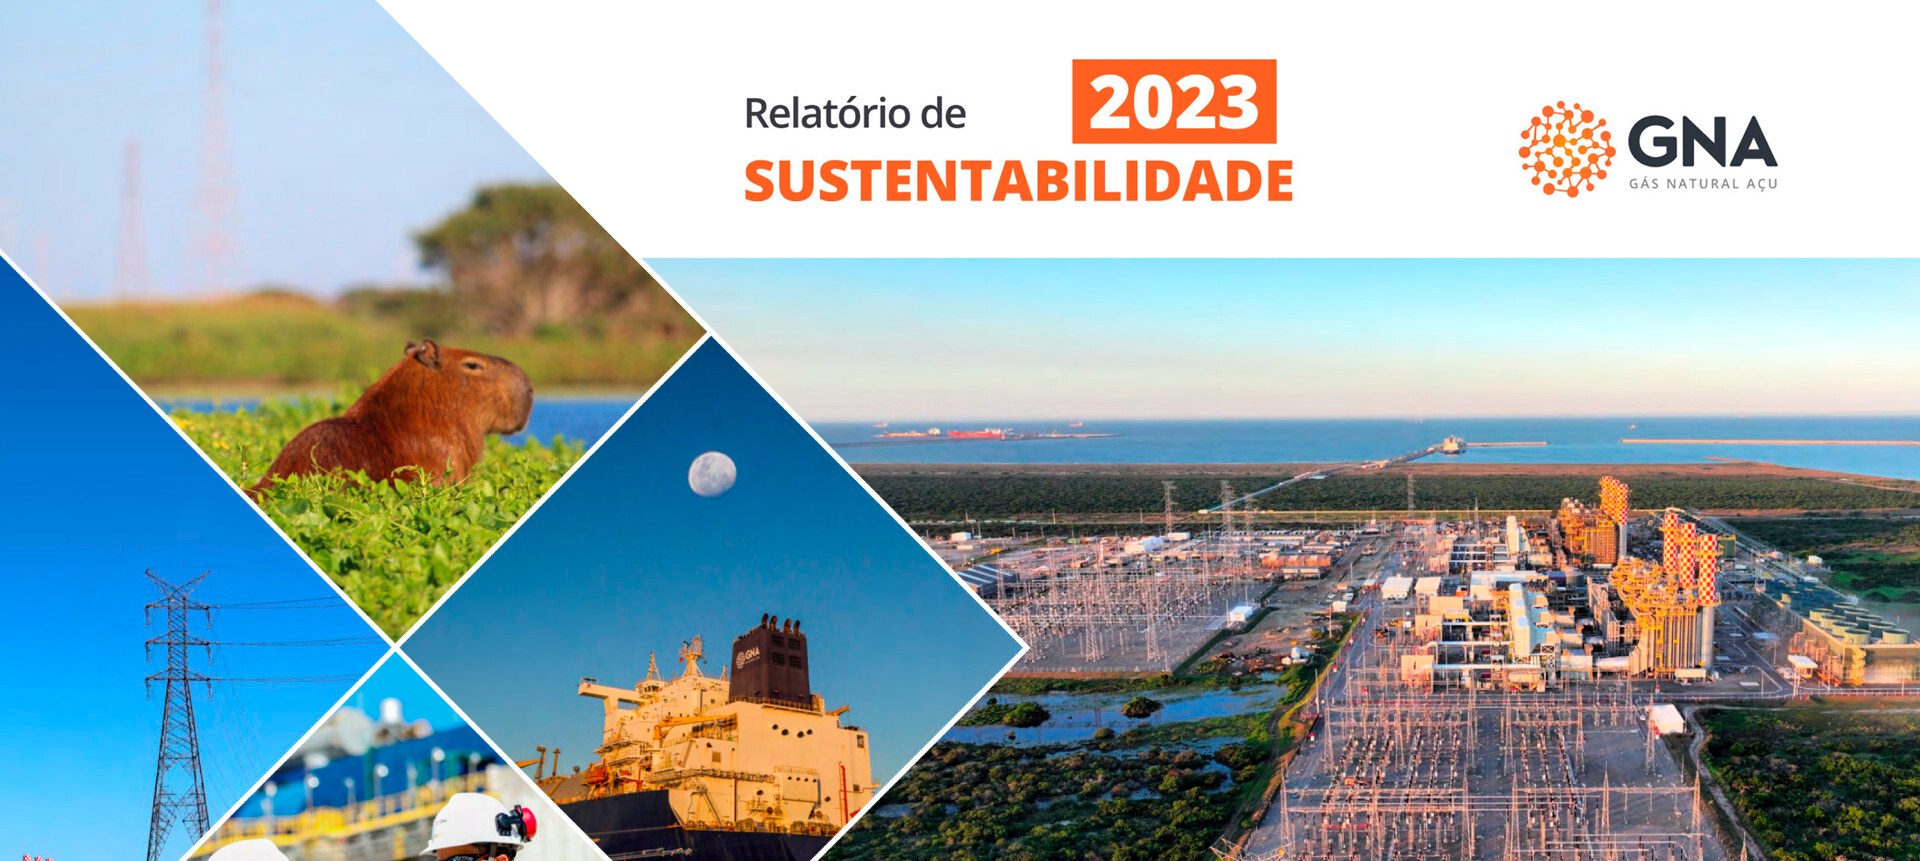 GNA lança Relatório de Sustentabilidade 2023